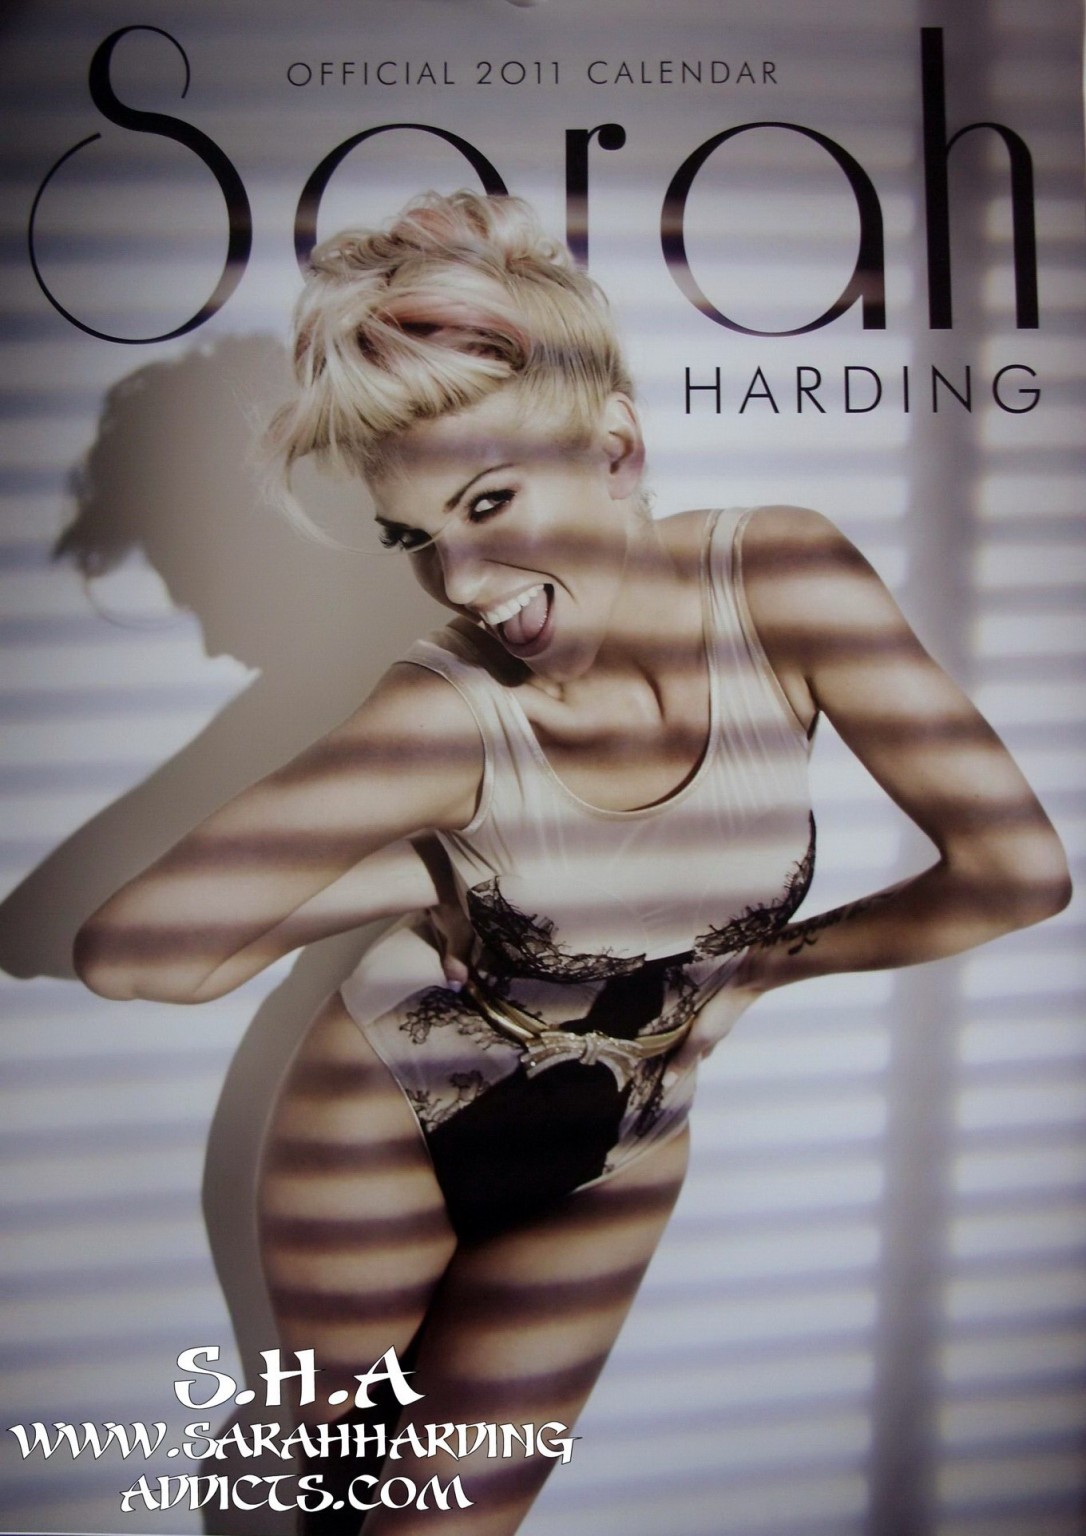 Sarah Harding nackt in Dessous für ihren offiziellen Kalender 2011
 #75332438